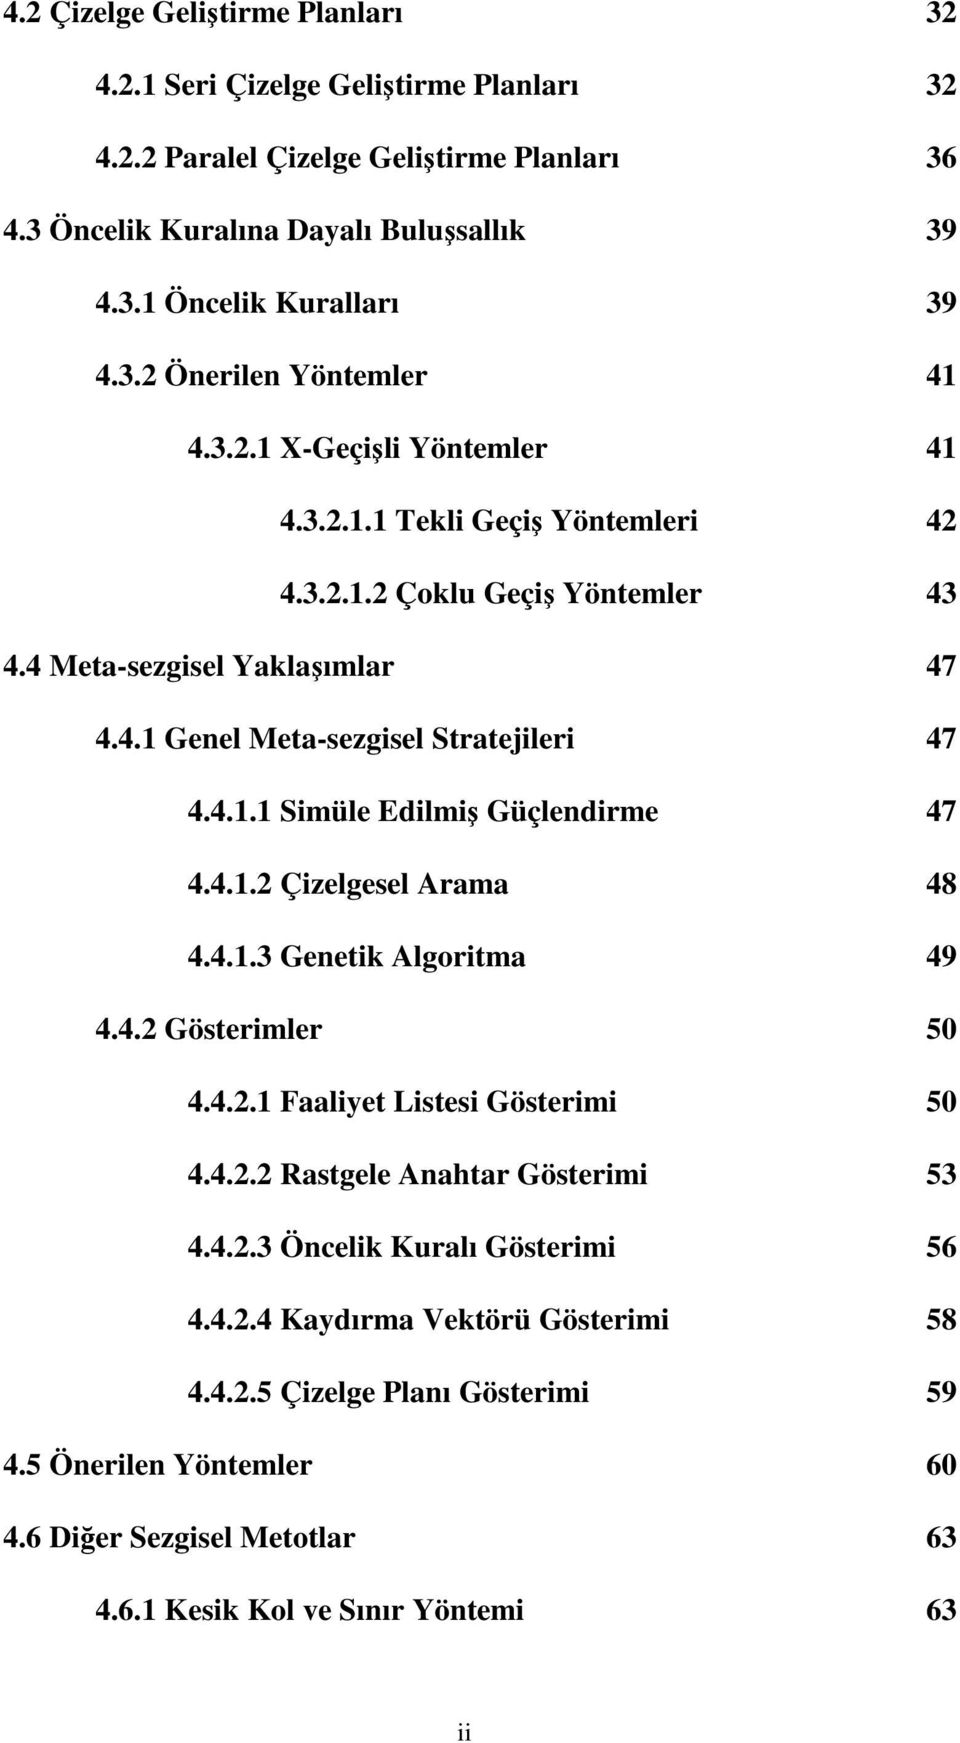 4.1.2 Çizelgesel Arama 48 4.4.1.3 Genetik Algoritma 49 4.4.2 Gösterimler 50 4.4.2.1 Faaliyet Listesi Gösterimi 50 4.4.2.2 Rastgele Anahtar Gösterimi 53 4.4.2.3 Öncelik Kuralı Gösterimi 56 4.4.2.4 Kaydırma Vektörü Gösterimi 58 4.